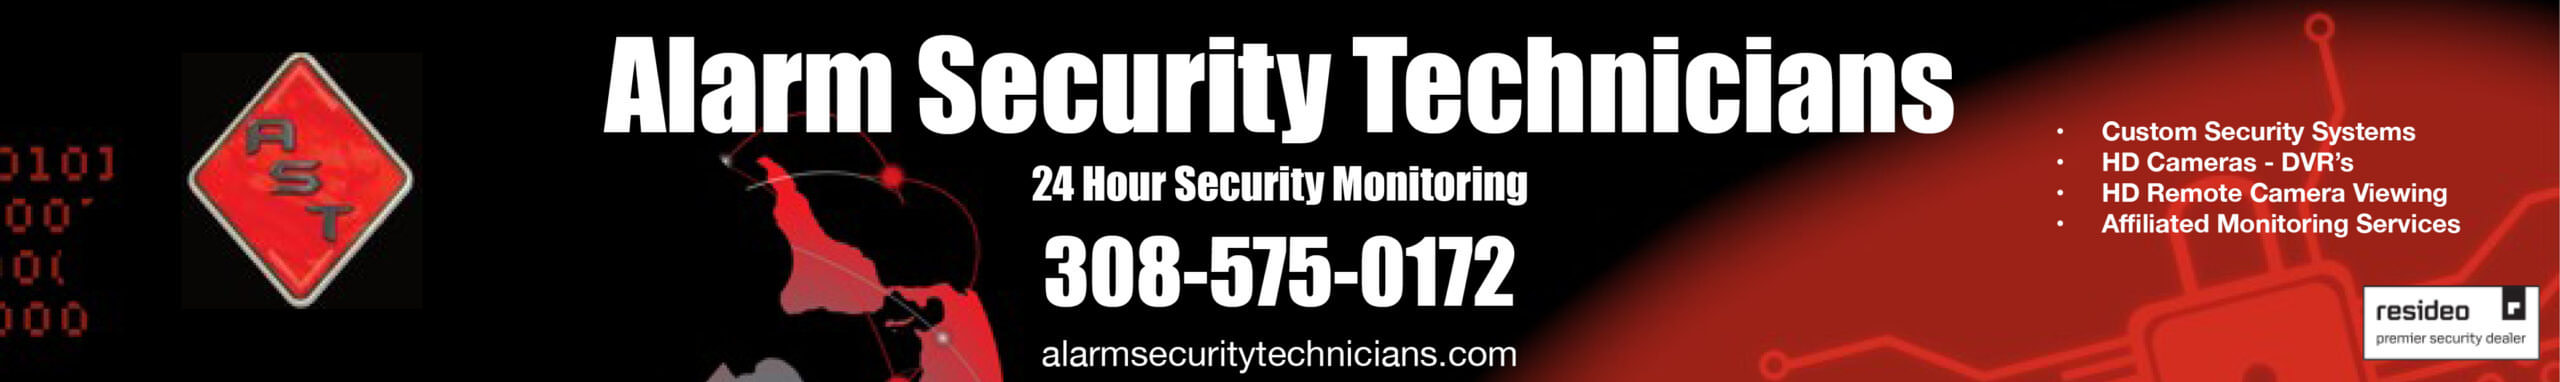 Alarm Security Technicians